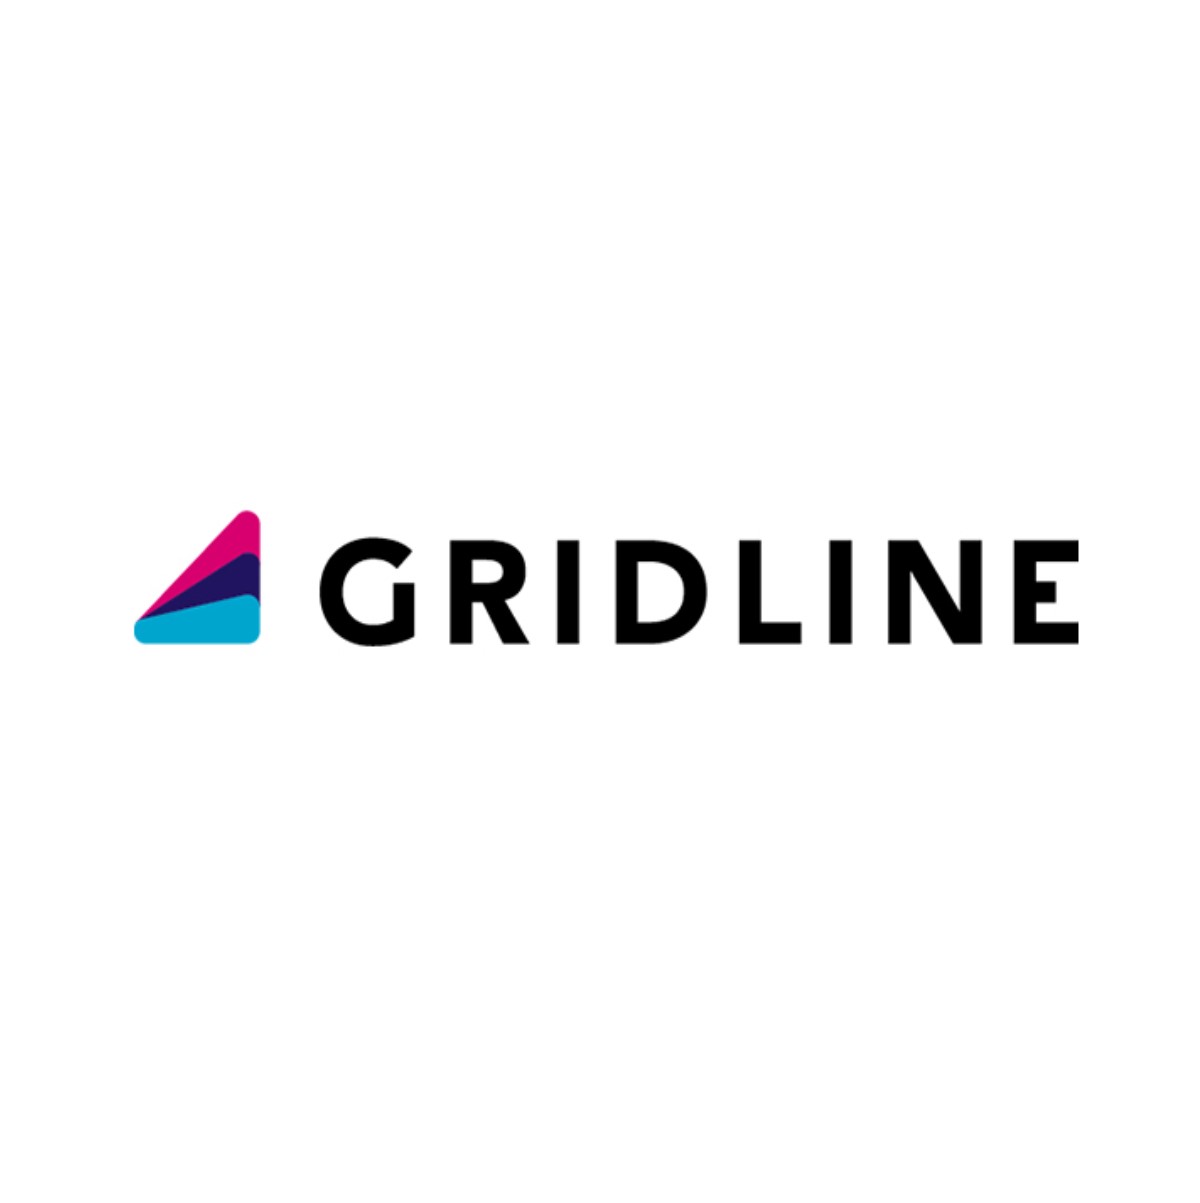 Gridline